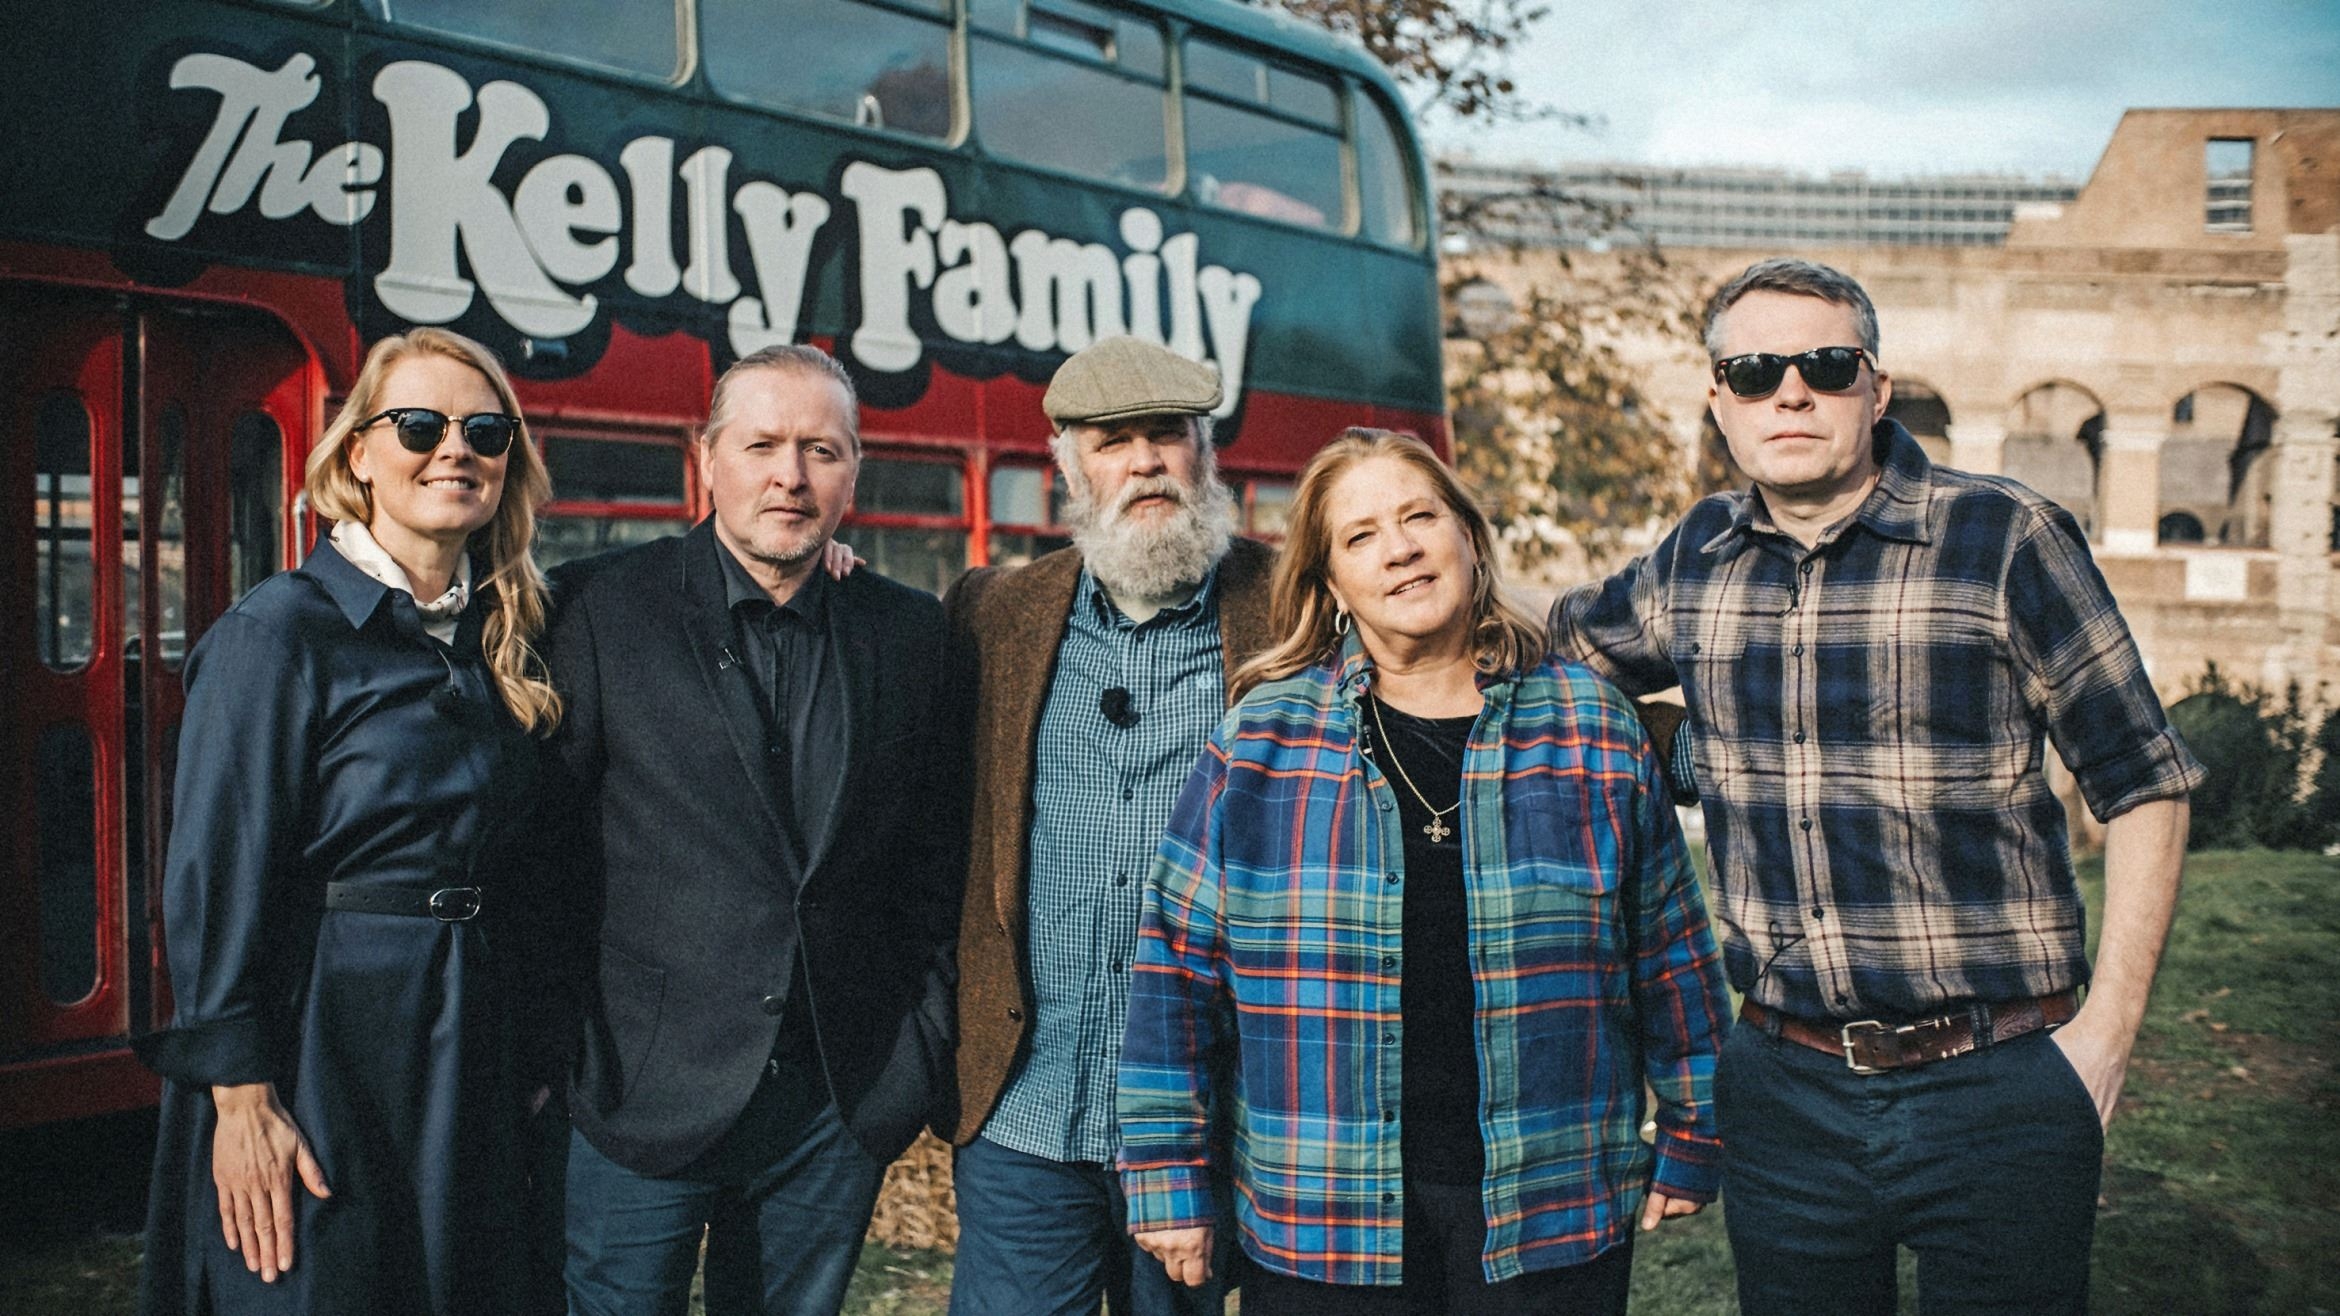 Patricia, Joey, Paul, Kathy und Jimmy Kelly (v.l.n.r.) in "Die Kelly Family - Die Reise geht weiter" - 